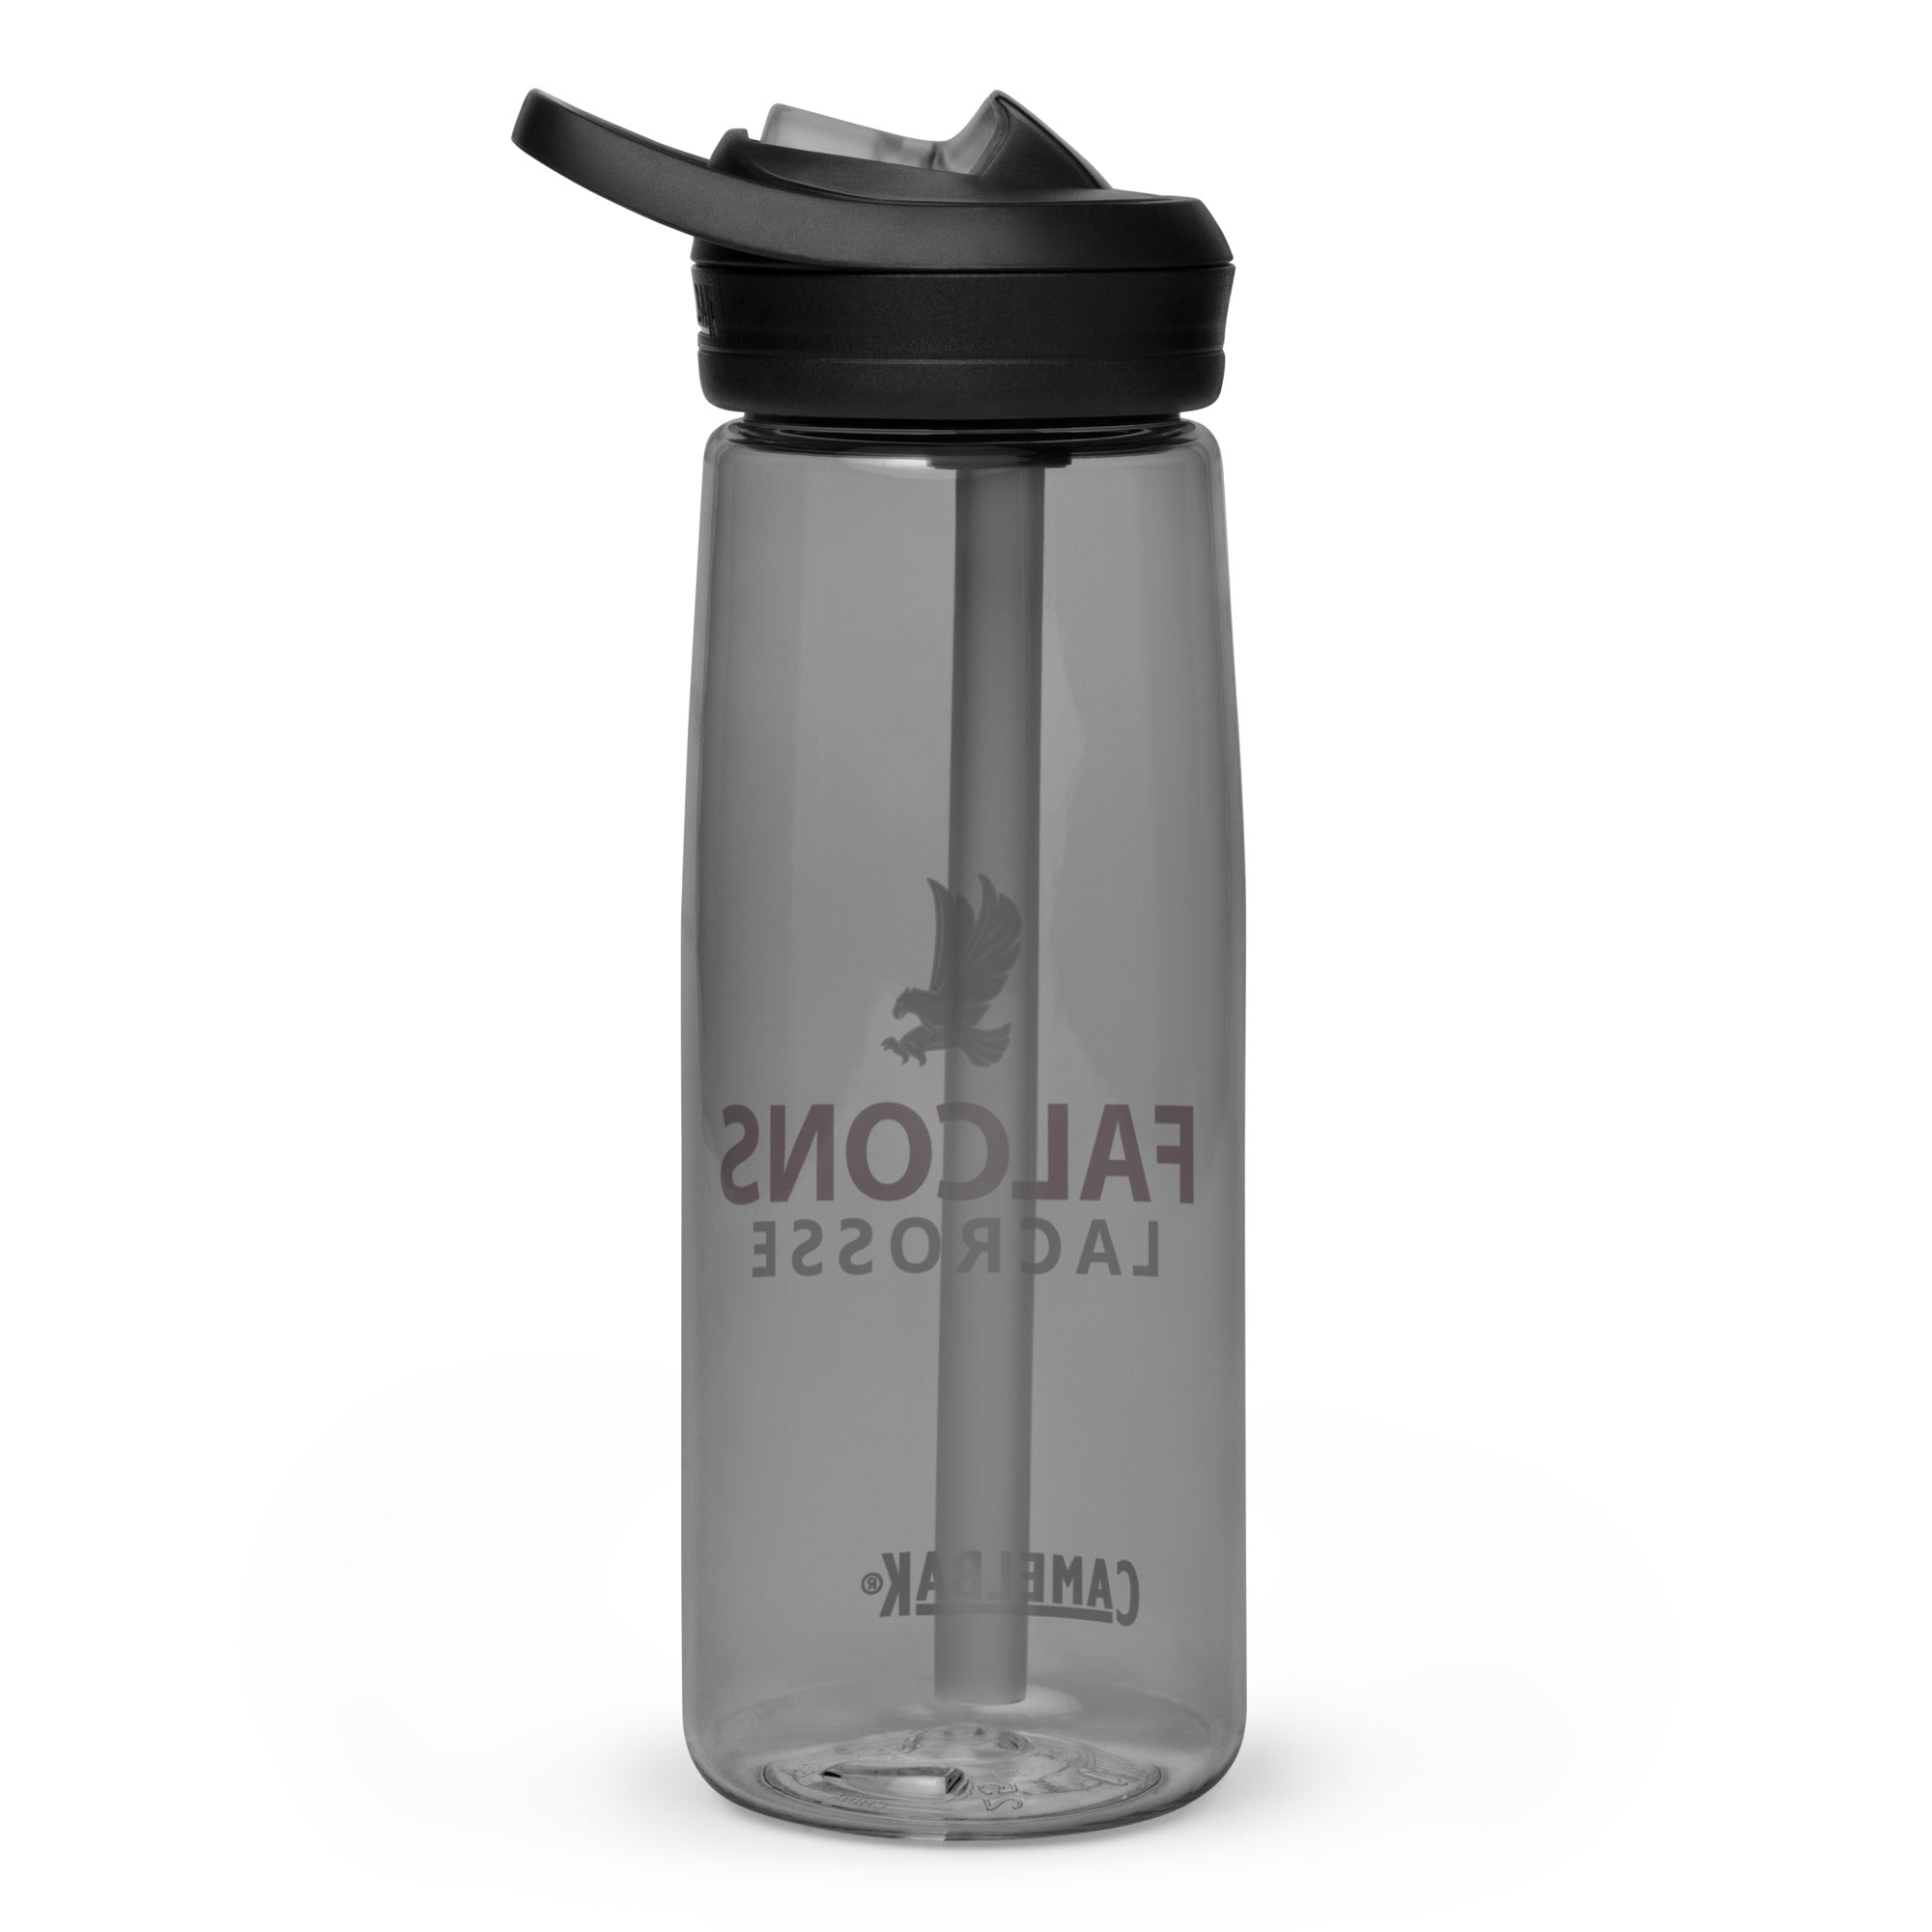 GMLA Sports water bottle